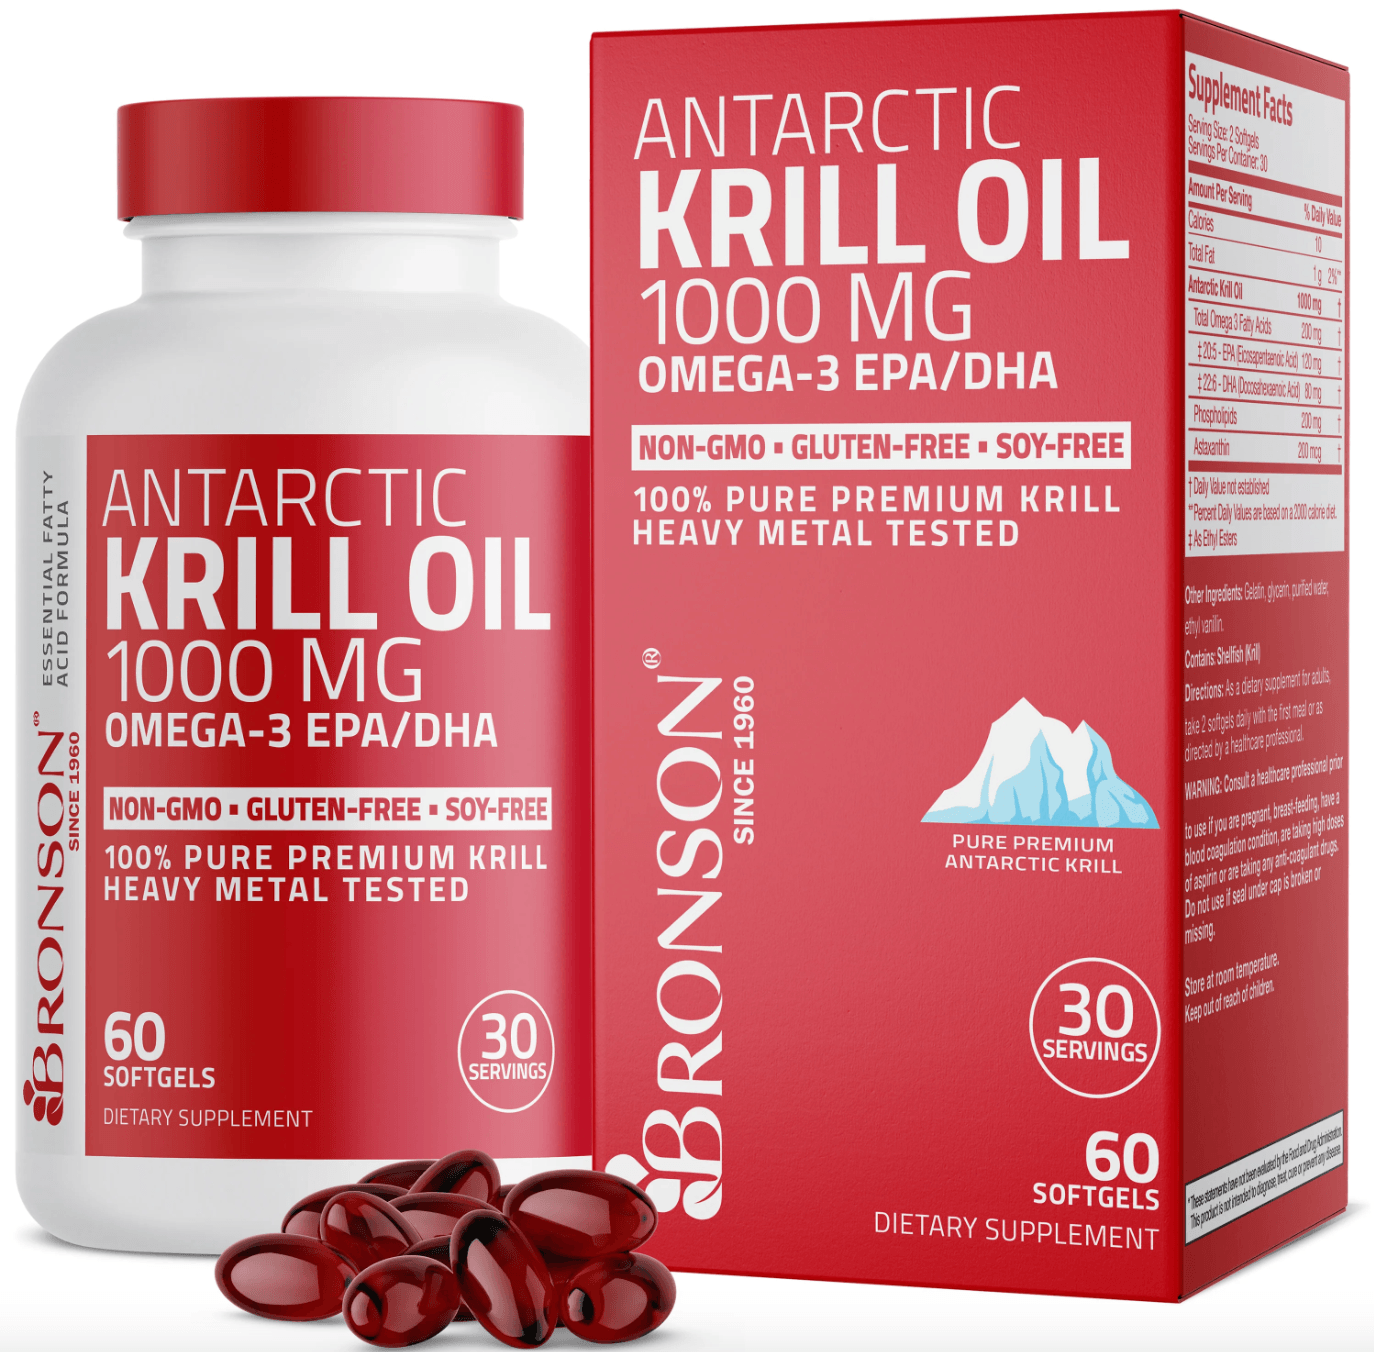 Suplemento Antarctic Krill Oil Bronson Vitamins 1000 mg Omega3 EPA DHA 60 Cápsulas